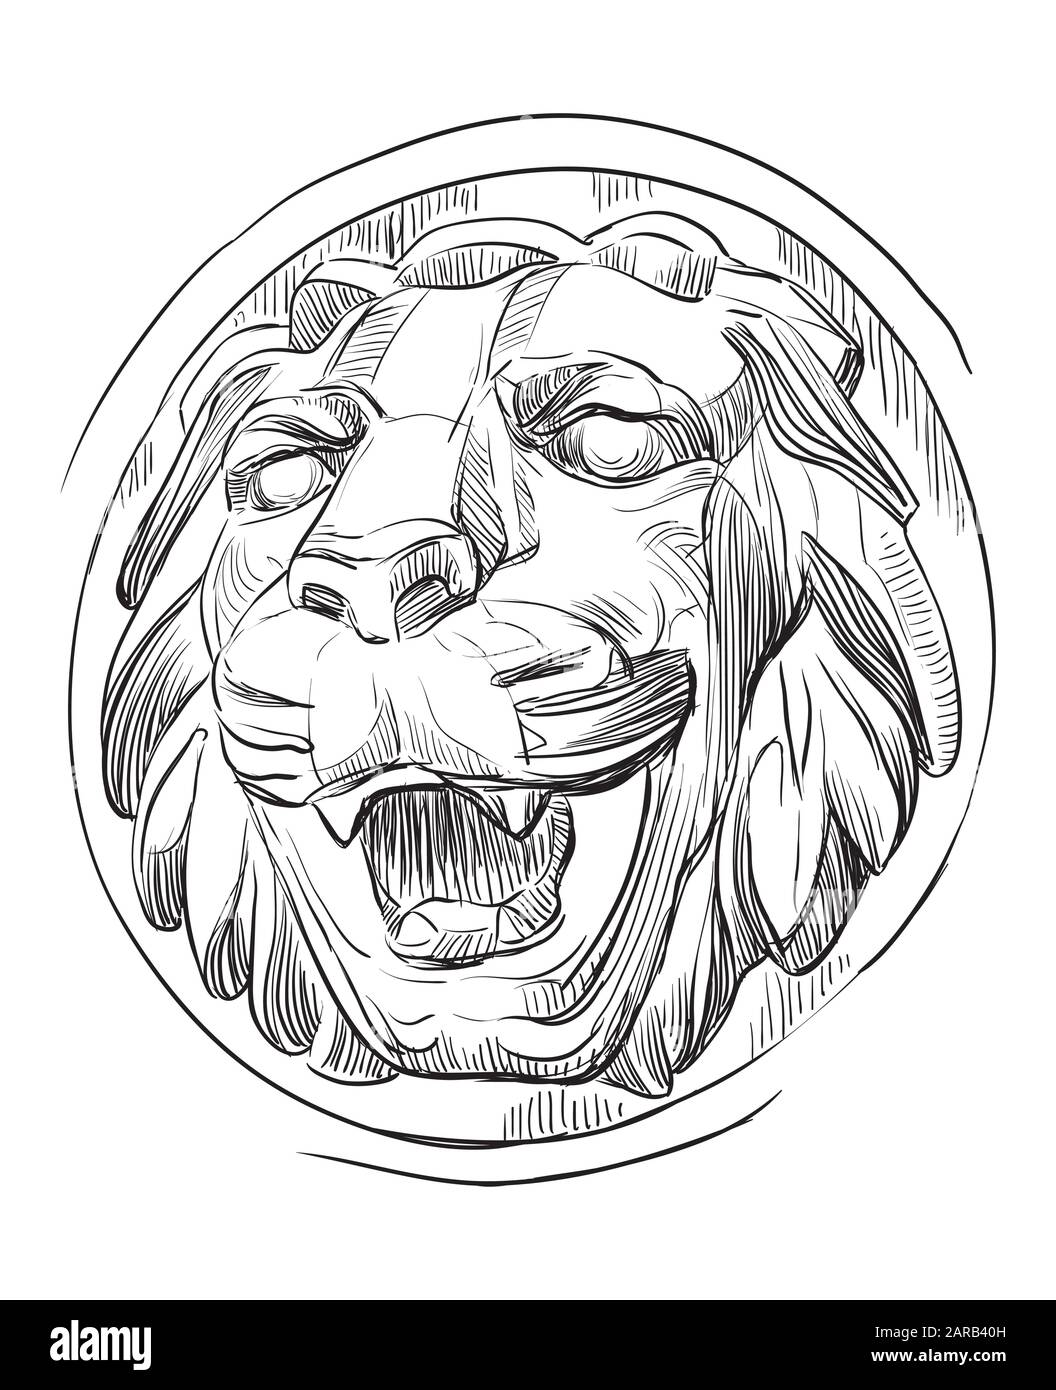 Antiguo bajorrelieve de piedra en forma de cabeza de león con boca abierta, vector dibujo a mano ilustración en color negro aislado sobre fondo blanco Ilustración del Vector